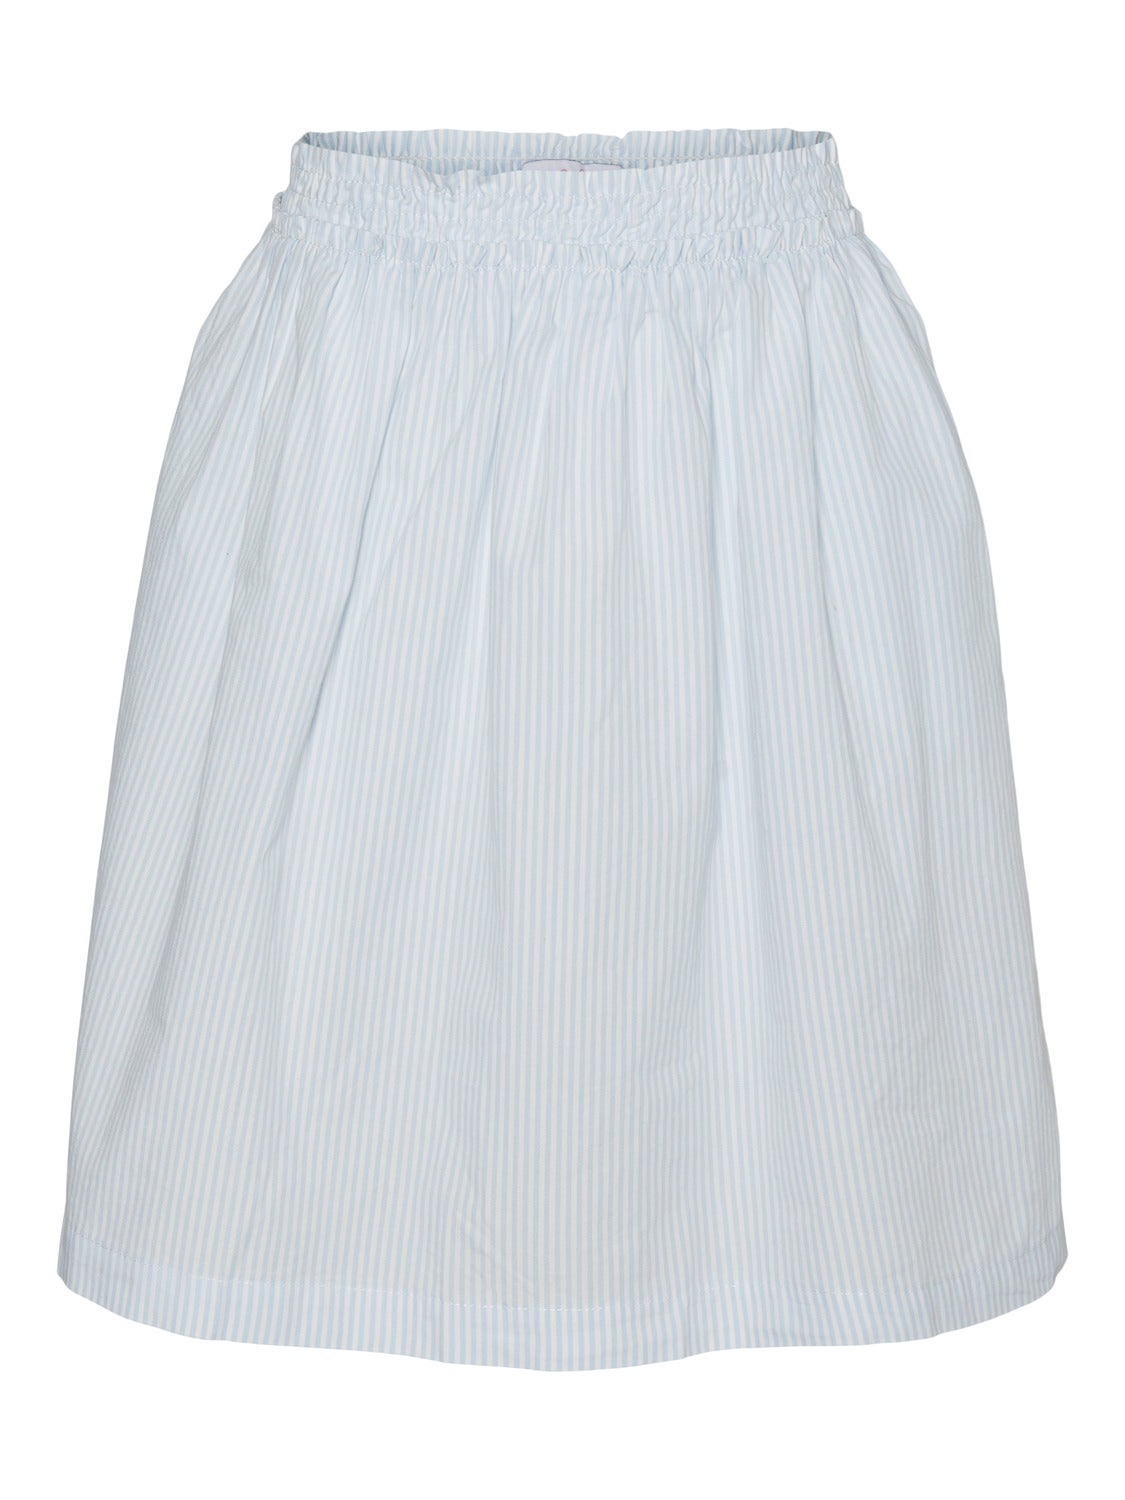 VMCORA Short Skirt